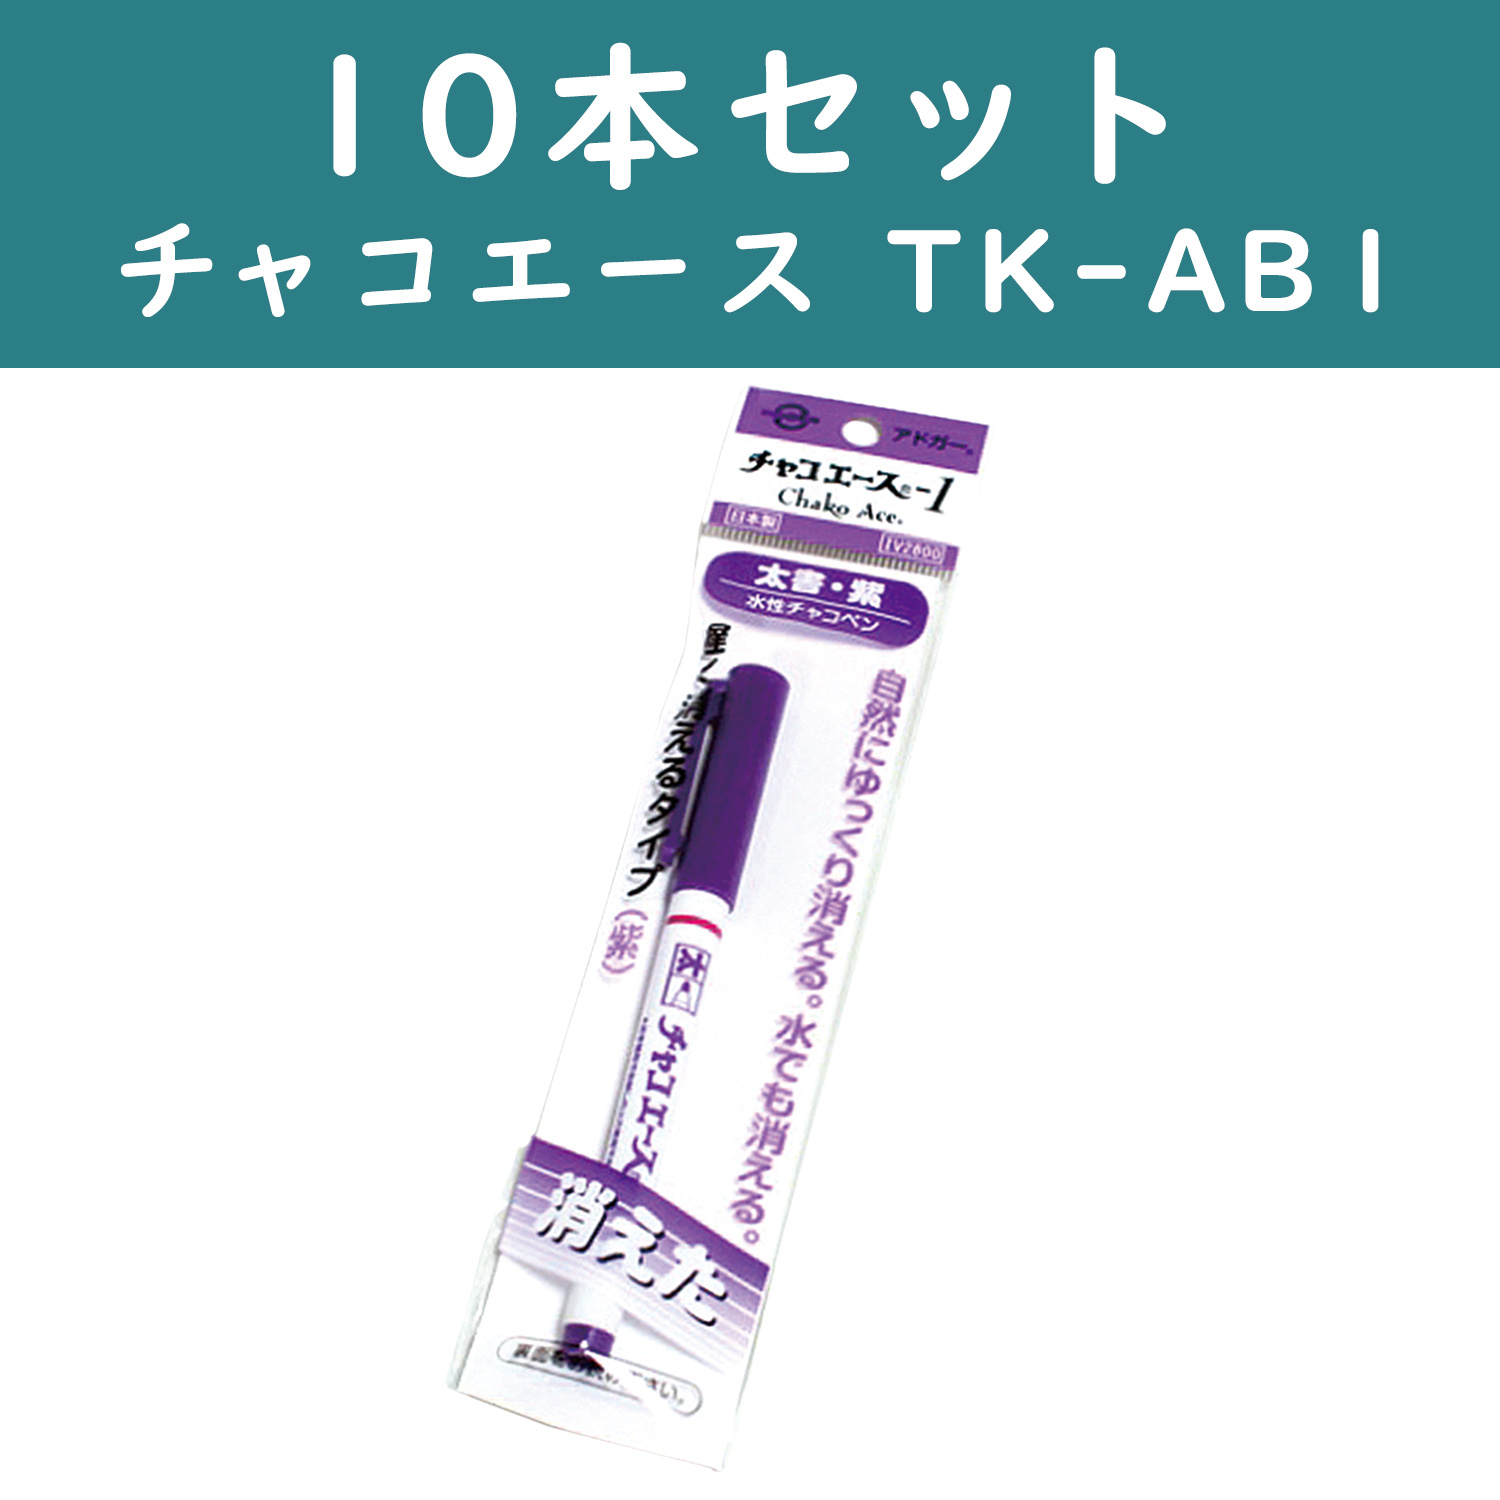 【2/9まで特価】F-AB1-10 チャコエース1 太番　紫 10本セット (セット)